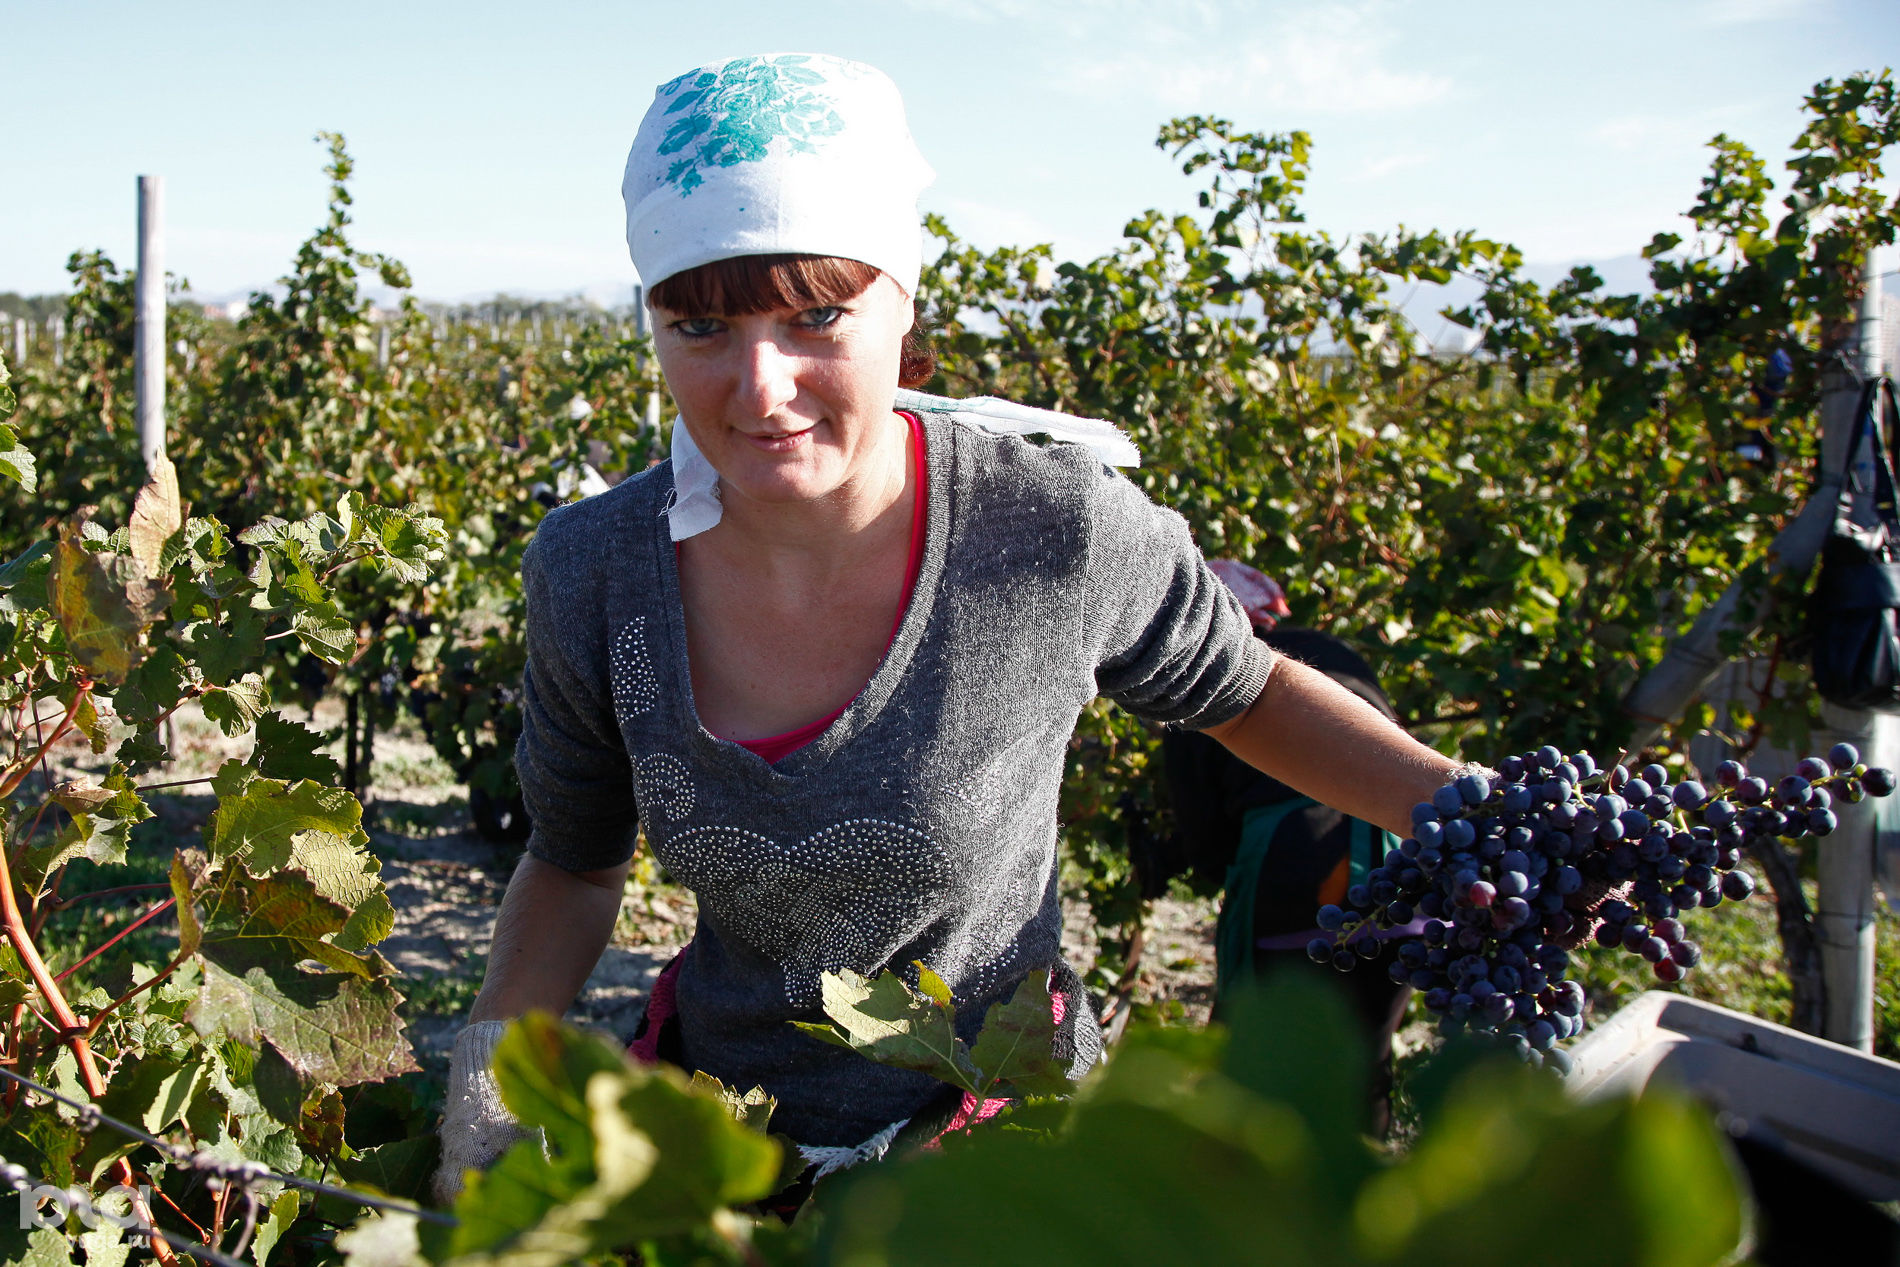 Сайт института садоводства и виноградарства краснодар